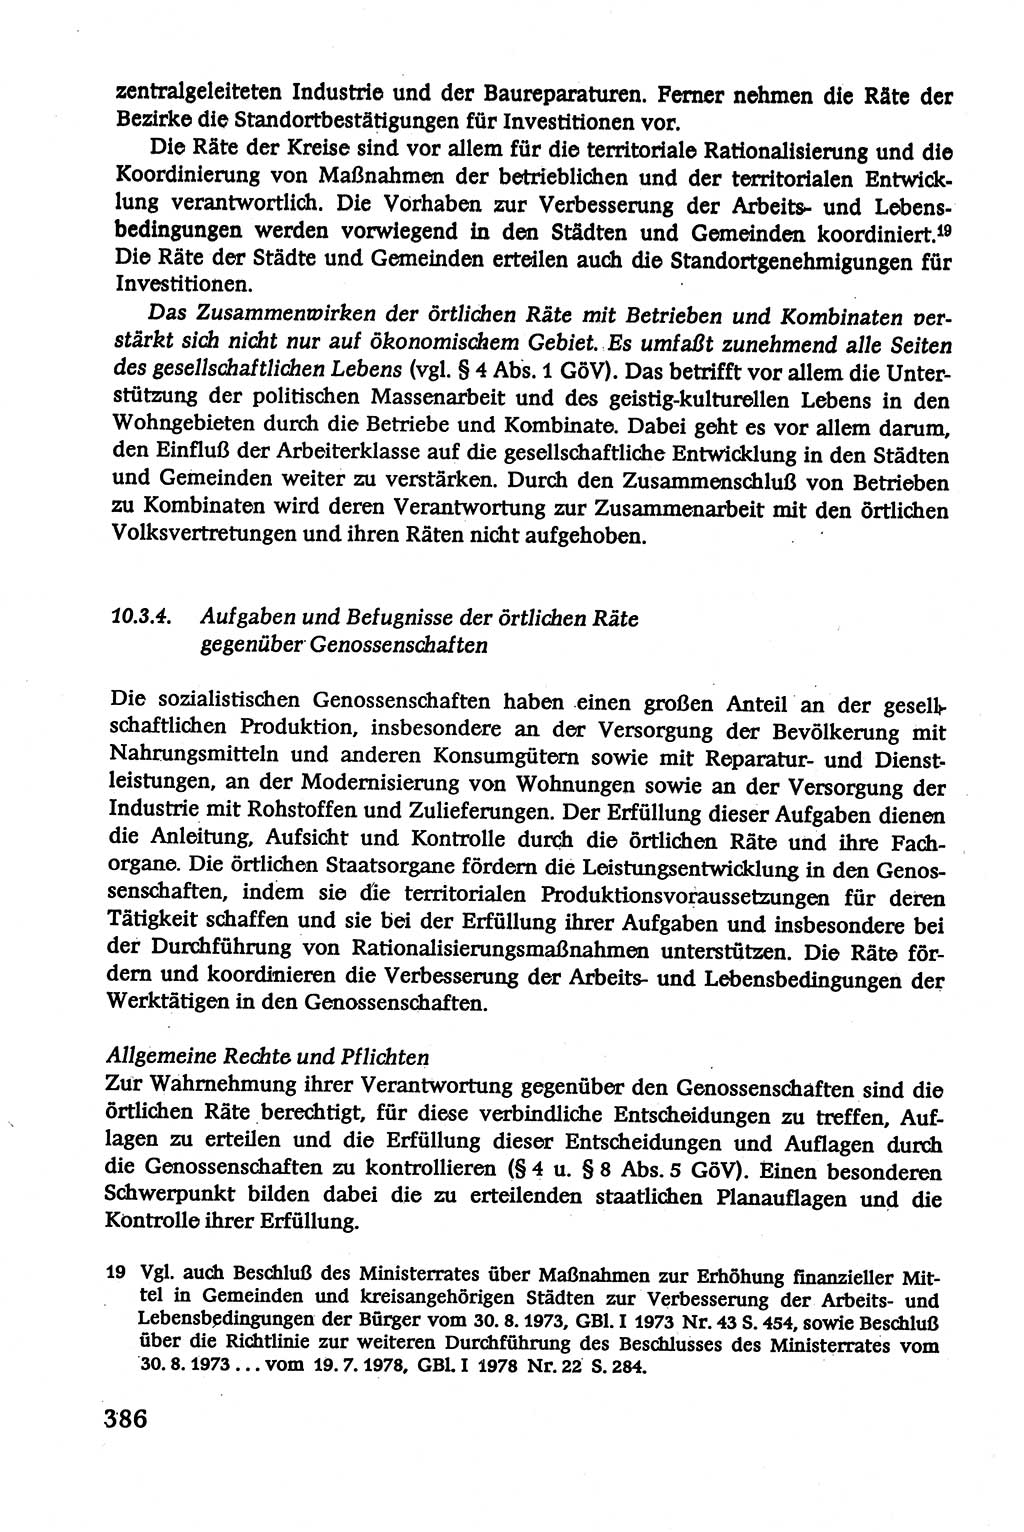 Verwaltungsrecht [Deutsche Demokratische Republik (DDR)], Lehrbuch 1979, Seite 386 (Verw.-R. DDR Lb. 1979, S. 386)